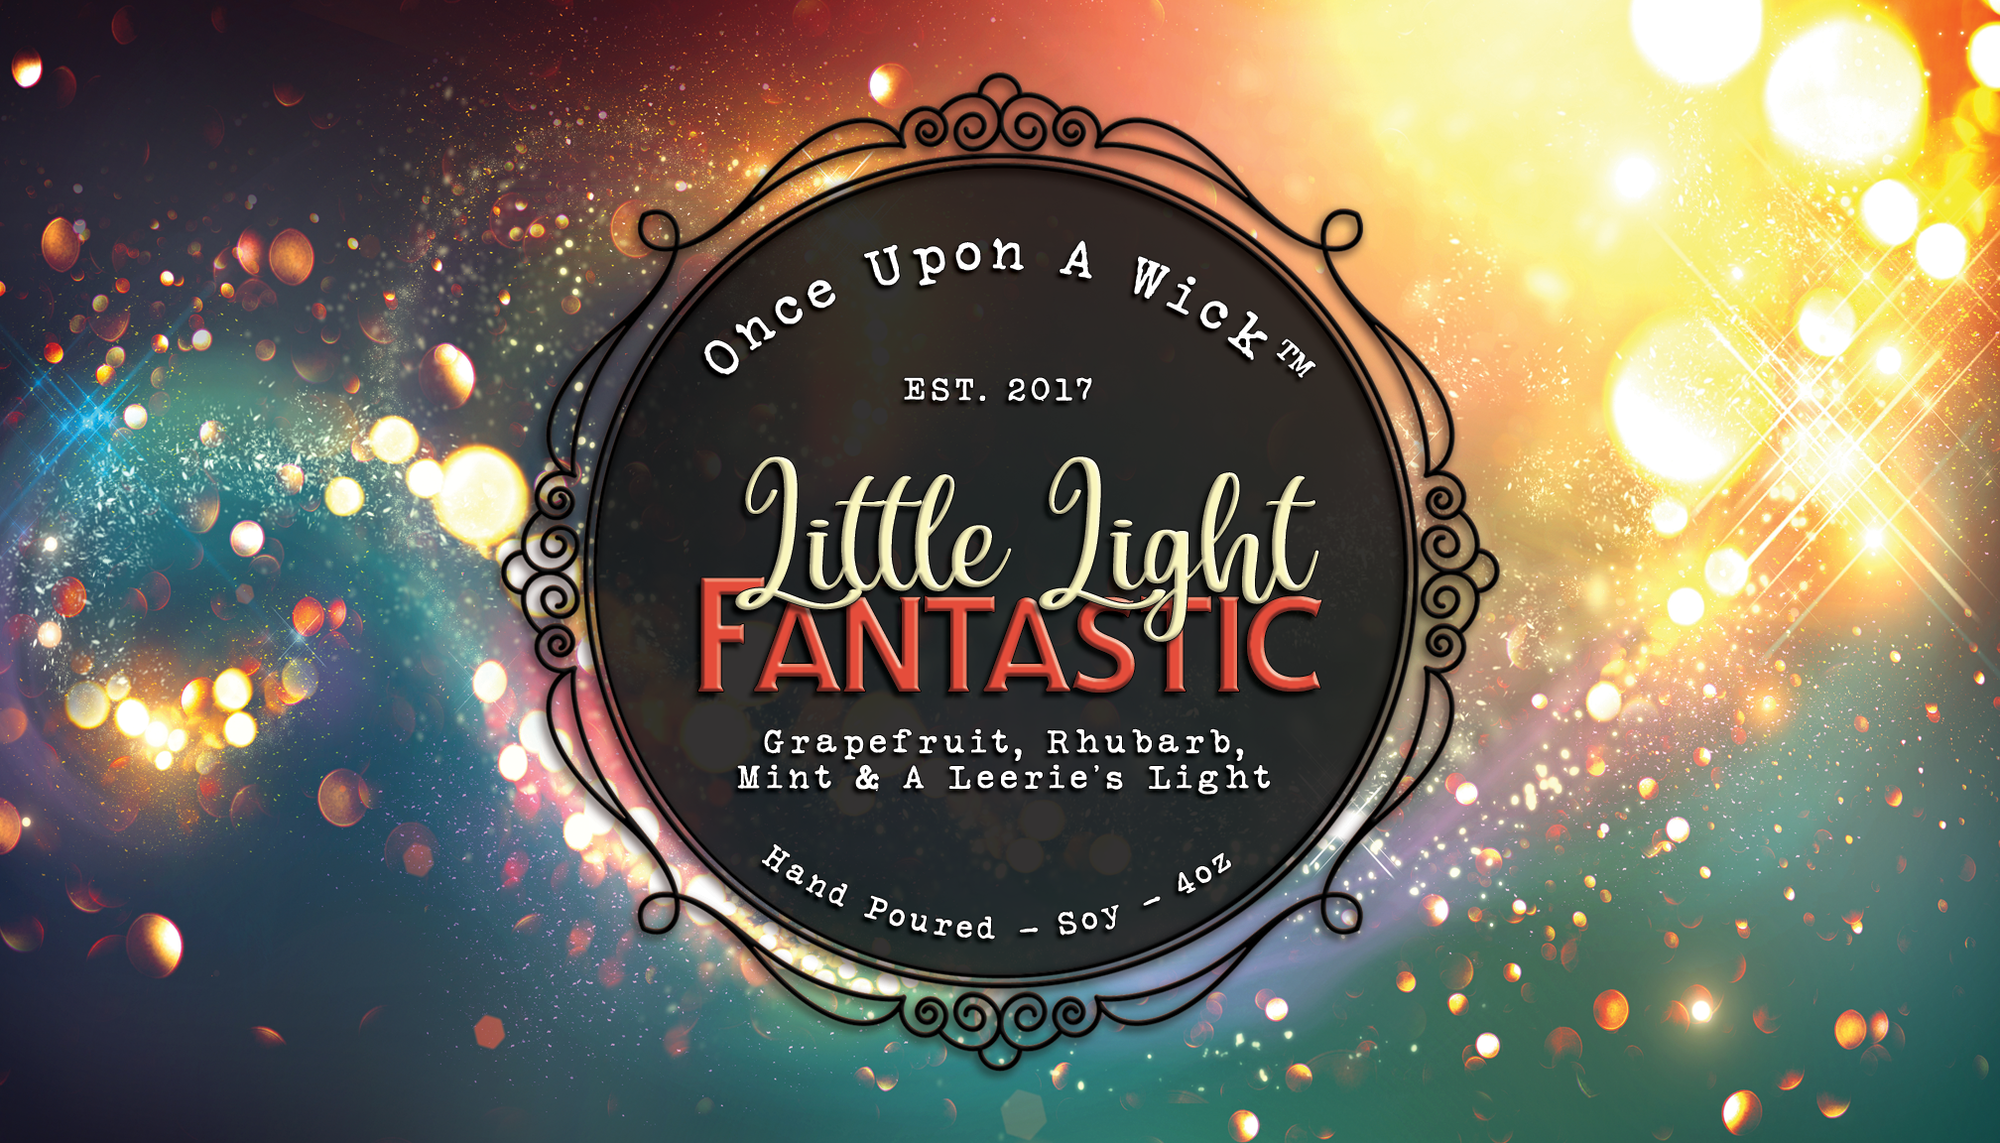 Little Light Fantastic | Mary Poppins Inspired